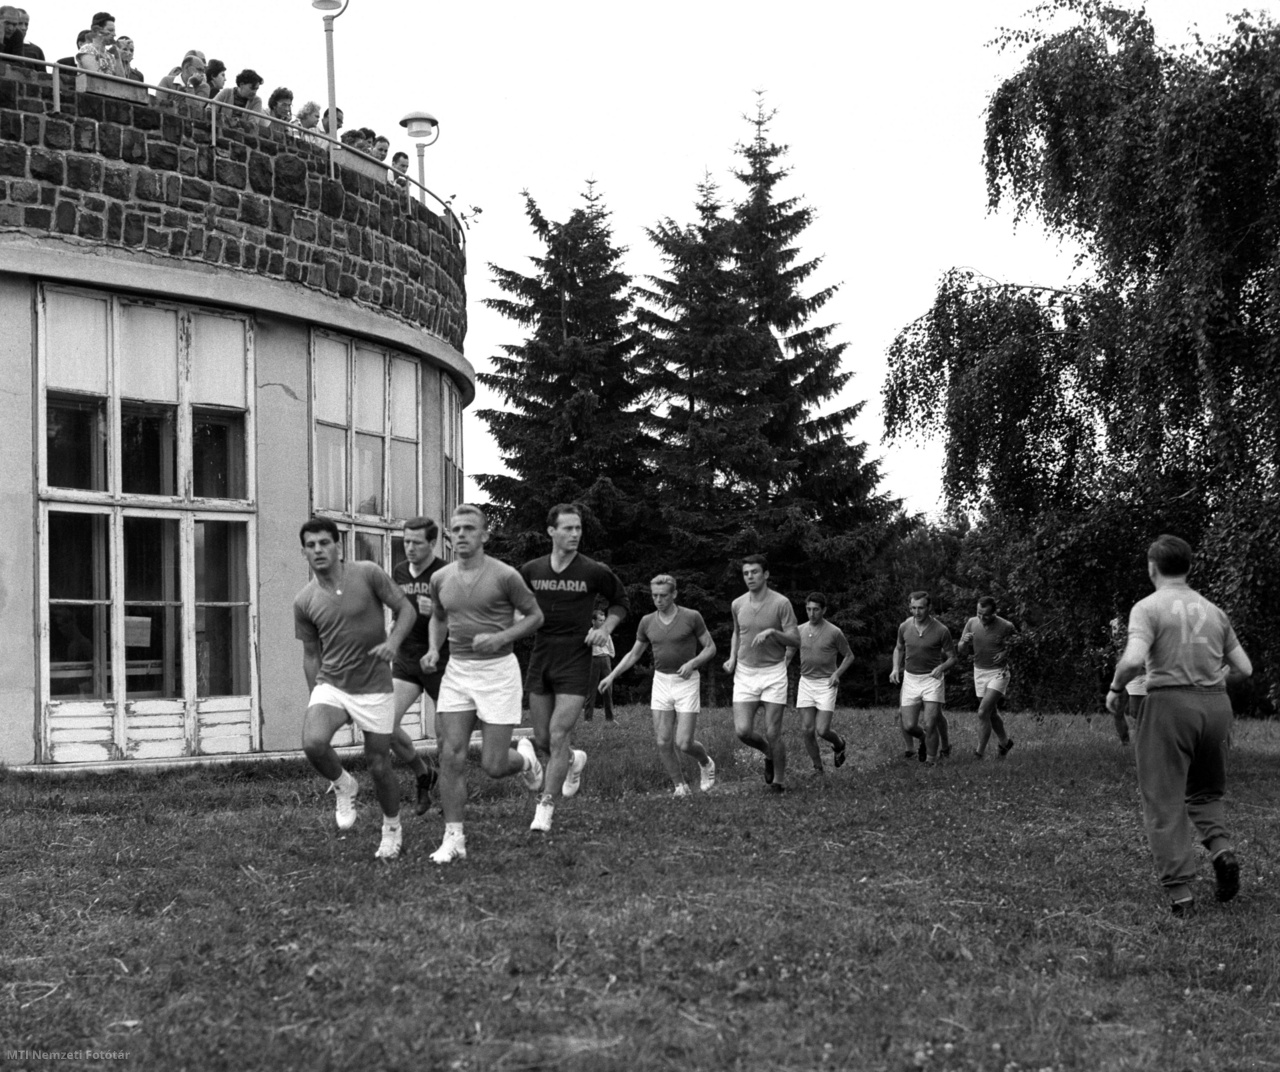 Galyatető, 18 de junio de 1966. Los miembros de la selección húngara de fútbol que se preparan para la Copa del Mundo en Londres corren mientras entrenan en el jardín del complejo SZOT en Galyatető, en el campo de entrenamiento a gran altura.